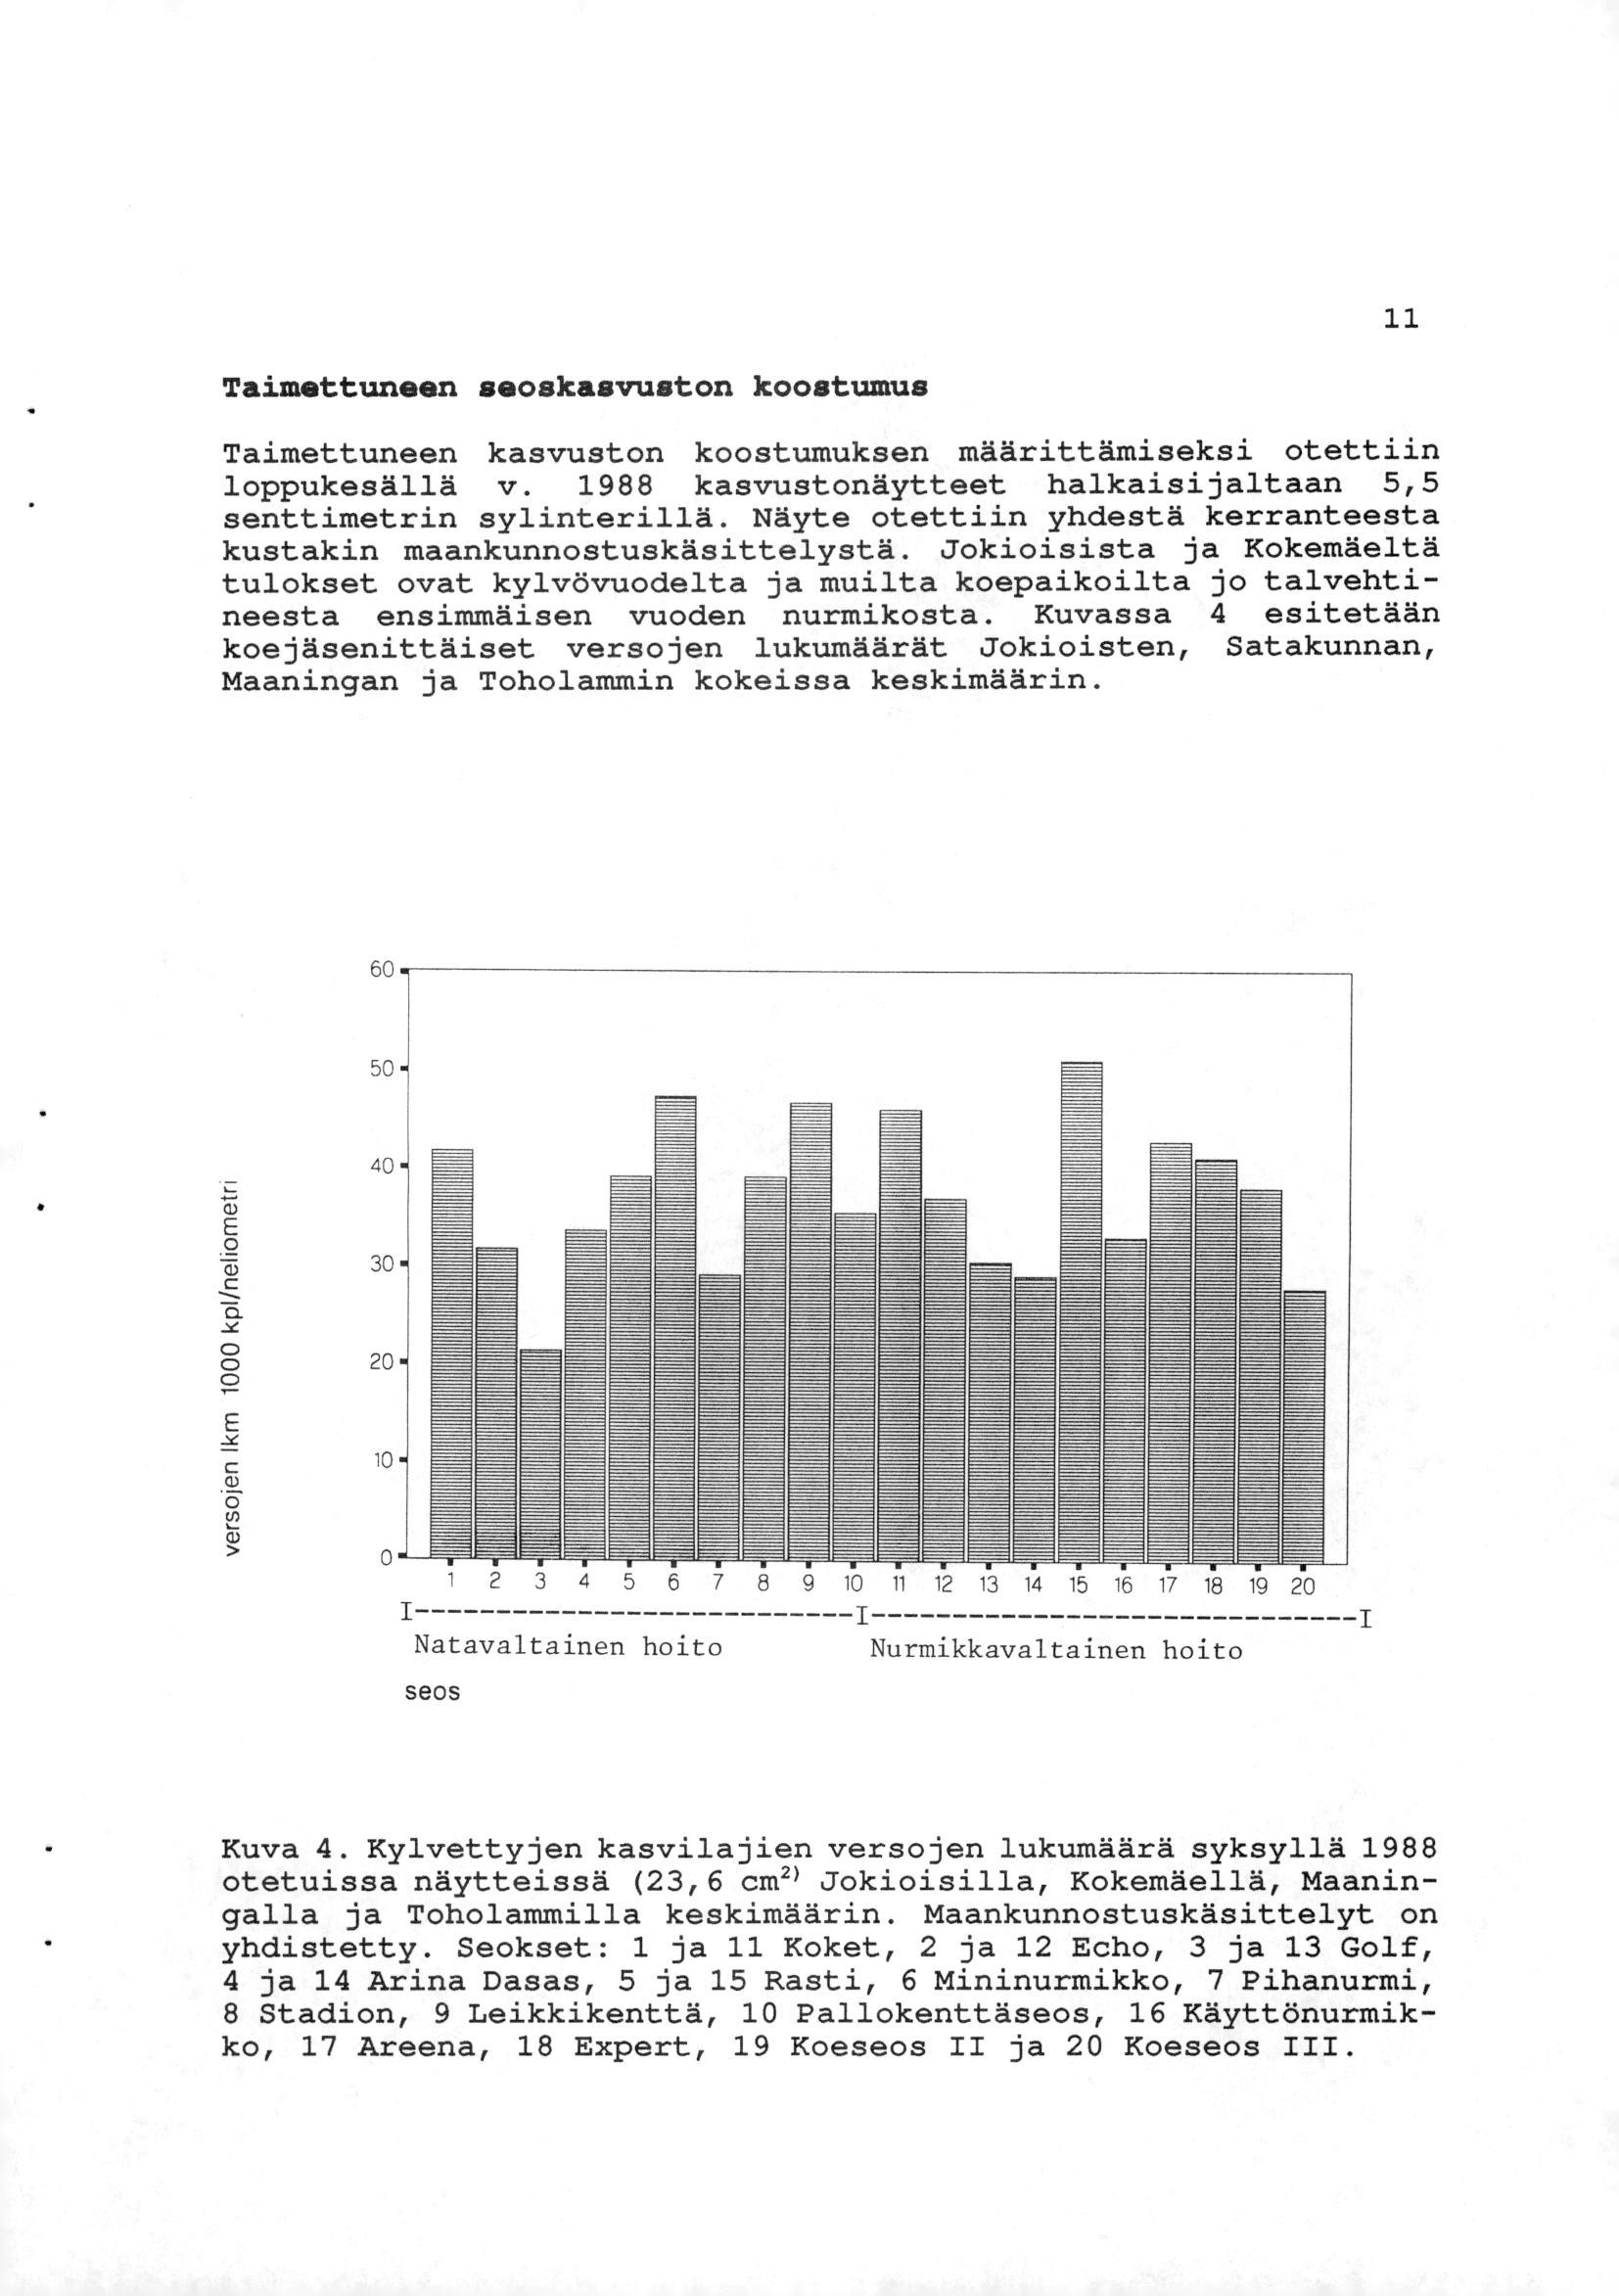 11 Taimettuneen seoskasvuston koostumus Taimettuneen kasvuston koostumuksen määrittämiseksi otettiin loppukesällä v. 1988 kasvustonäytteet halkaisijaltaan 5,5 senttimetrin sylinterillä.